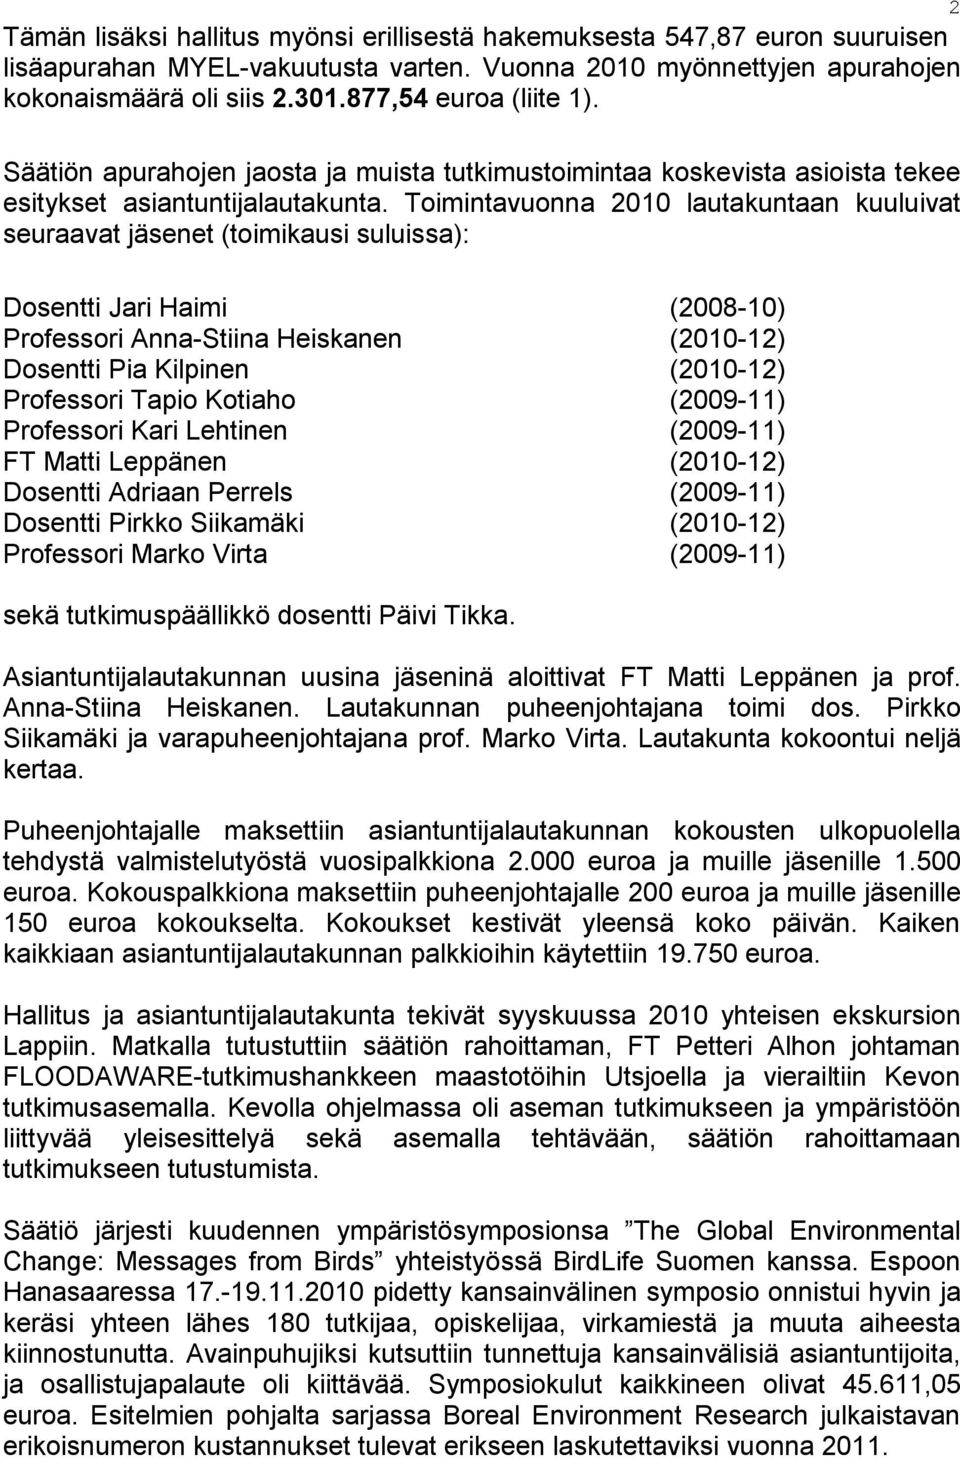 Toimintavuonna 2010 lautakuntaan kuuluivat seuraavat jäsenet (toimikausi suluissa): Dosentti Jari Haimi (2008-10) Professori Anna-Stiina Heiskanen (2010-12) Dosentti Pia Kilpinen (2010-12) Professori